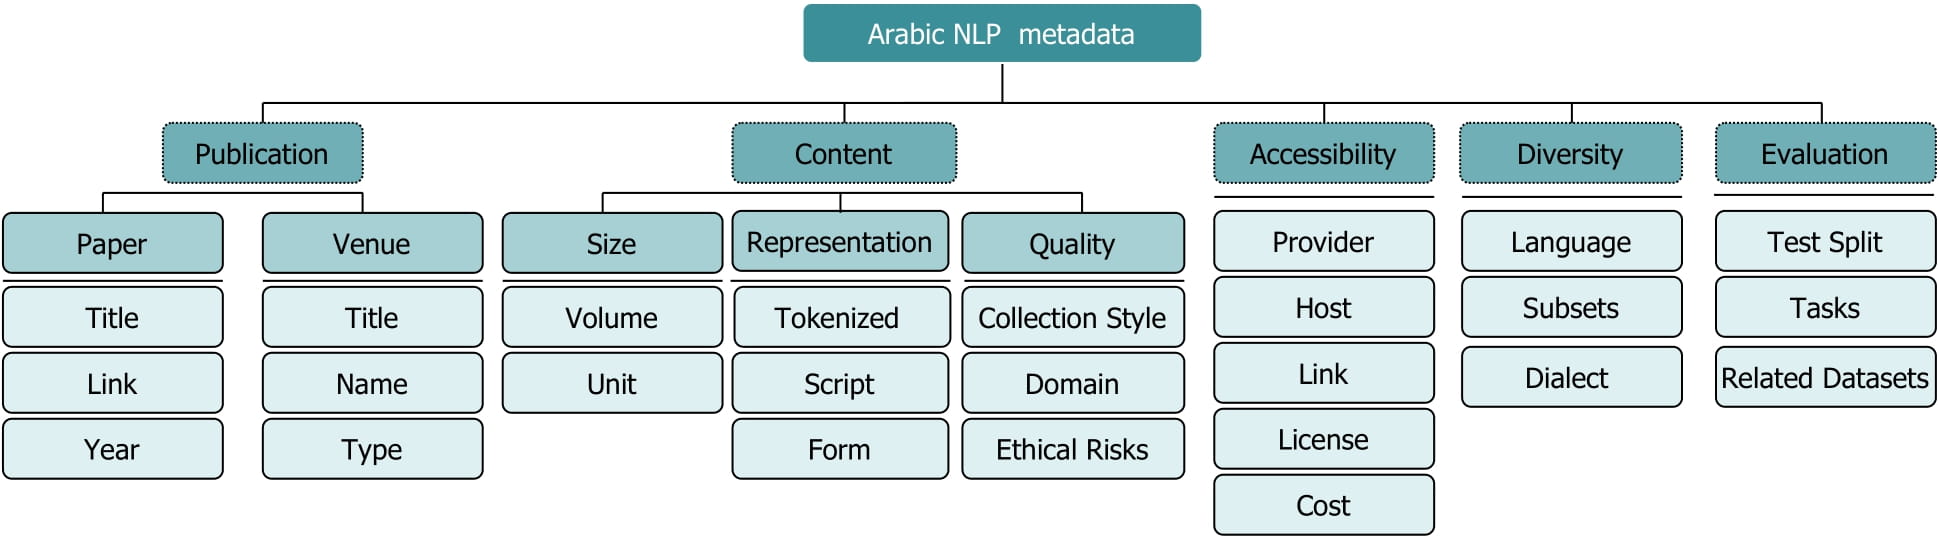 Arabic NLP metadata